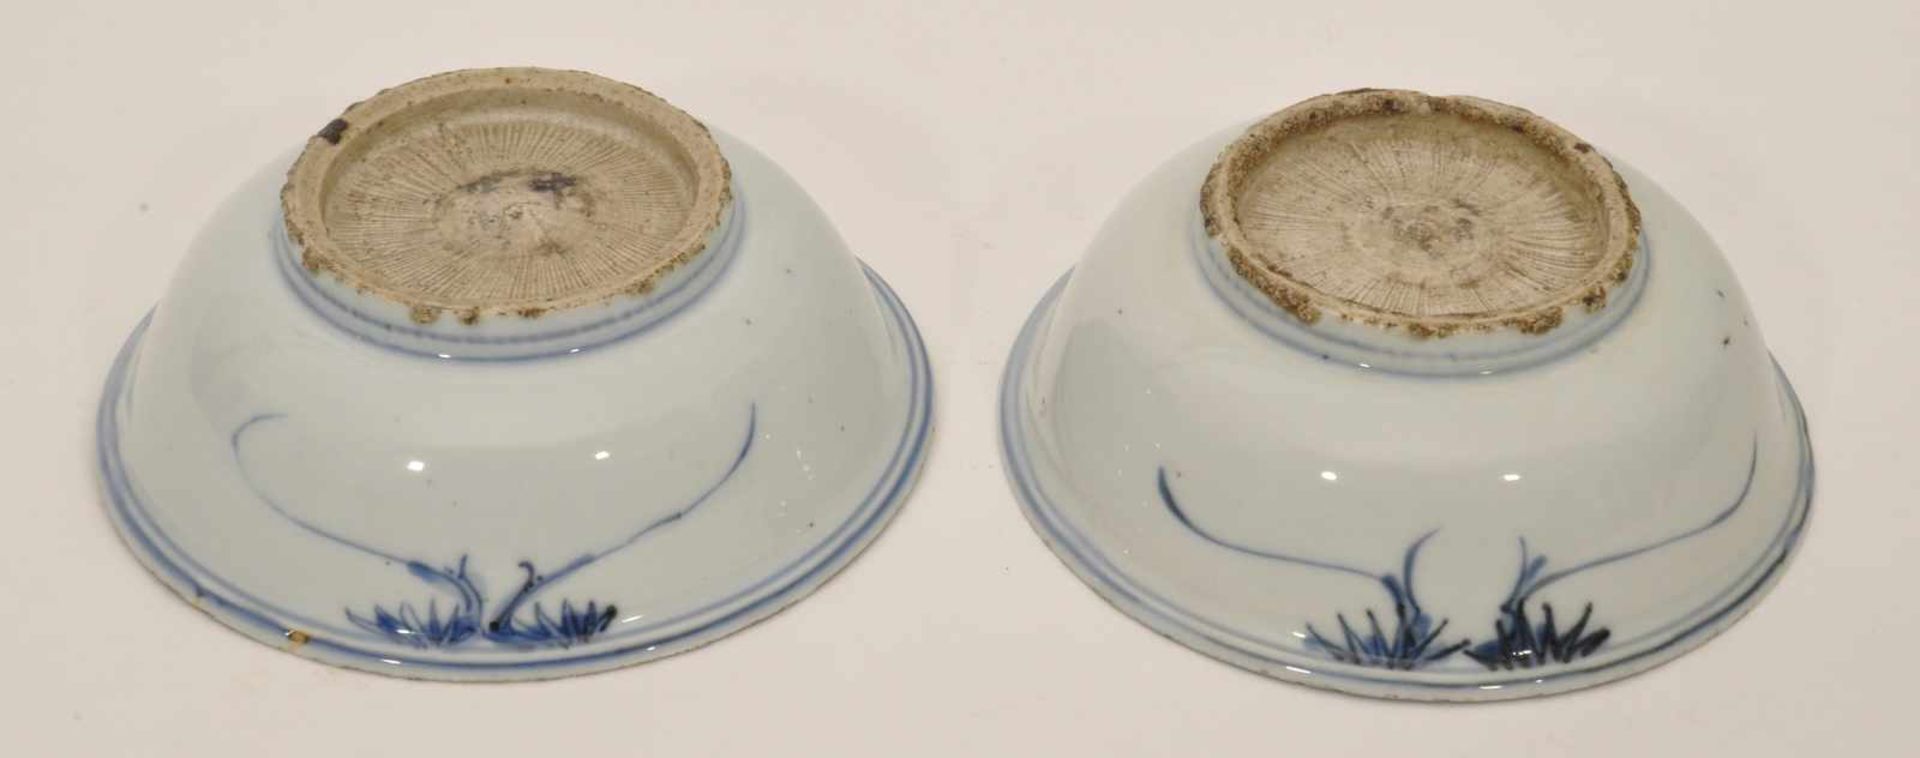 2 Schalen China, 19. Jh., Porzellan, Blaudekor, D. 15,5 cm, H. 5,5 cm - Bild 3 aus 3